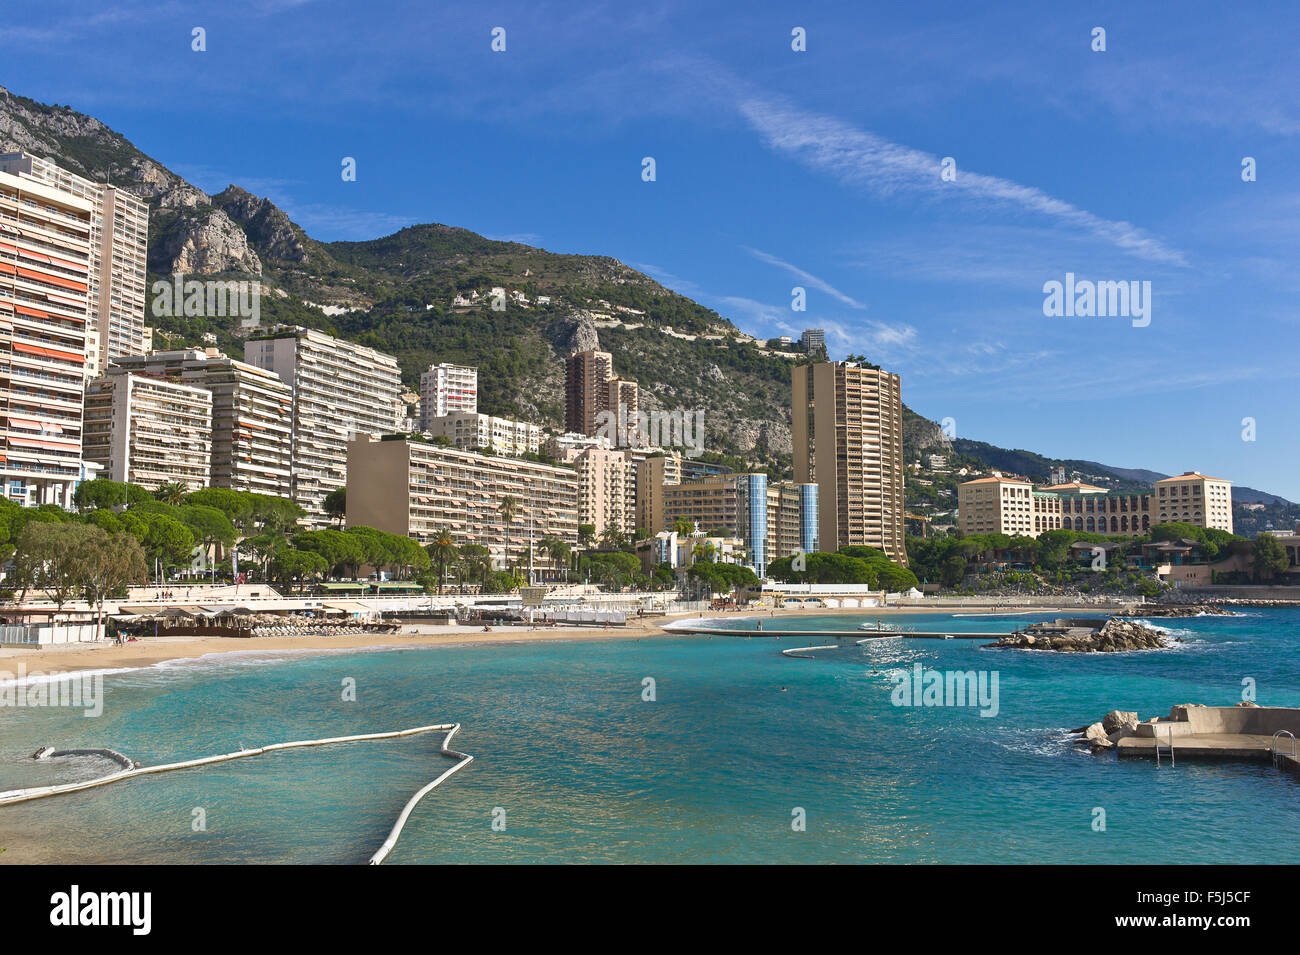 Larvotto Ward and its beach - Monaco, Monte Carlo Stock Photo